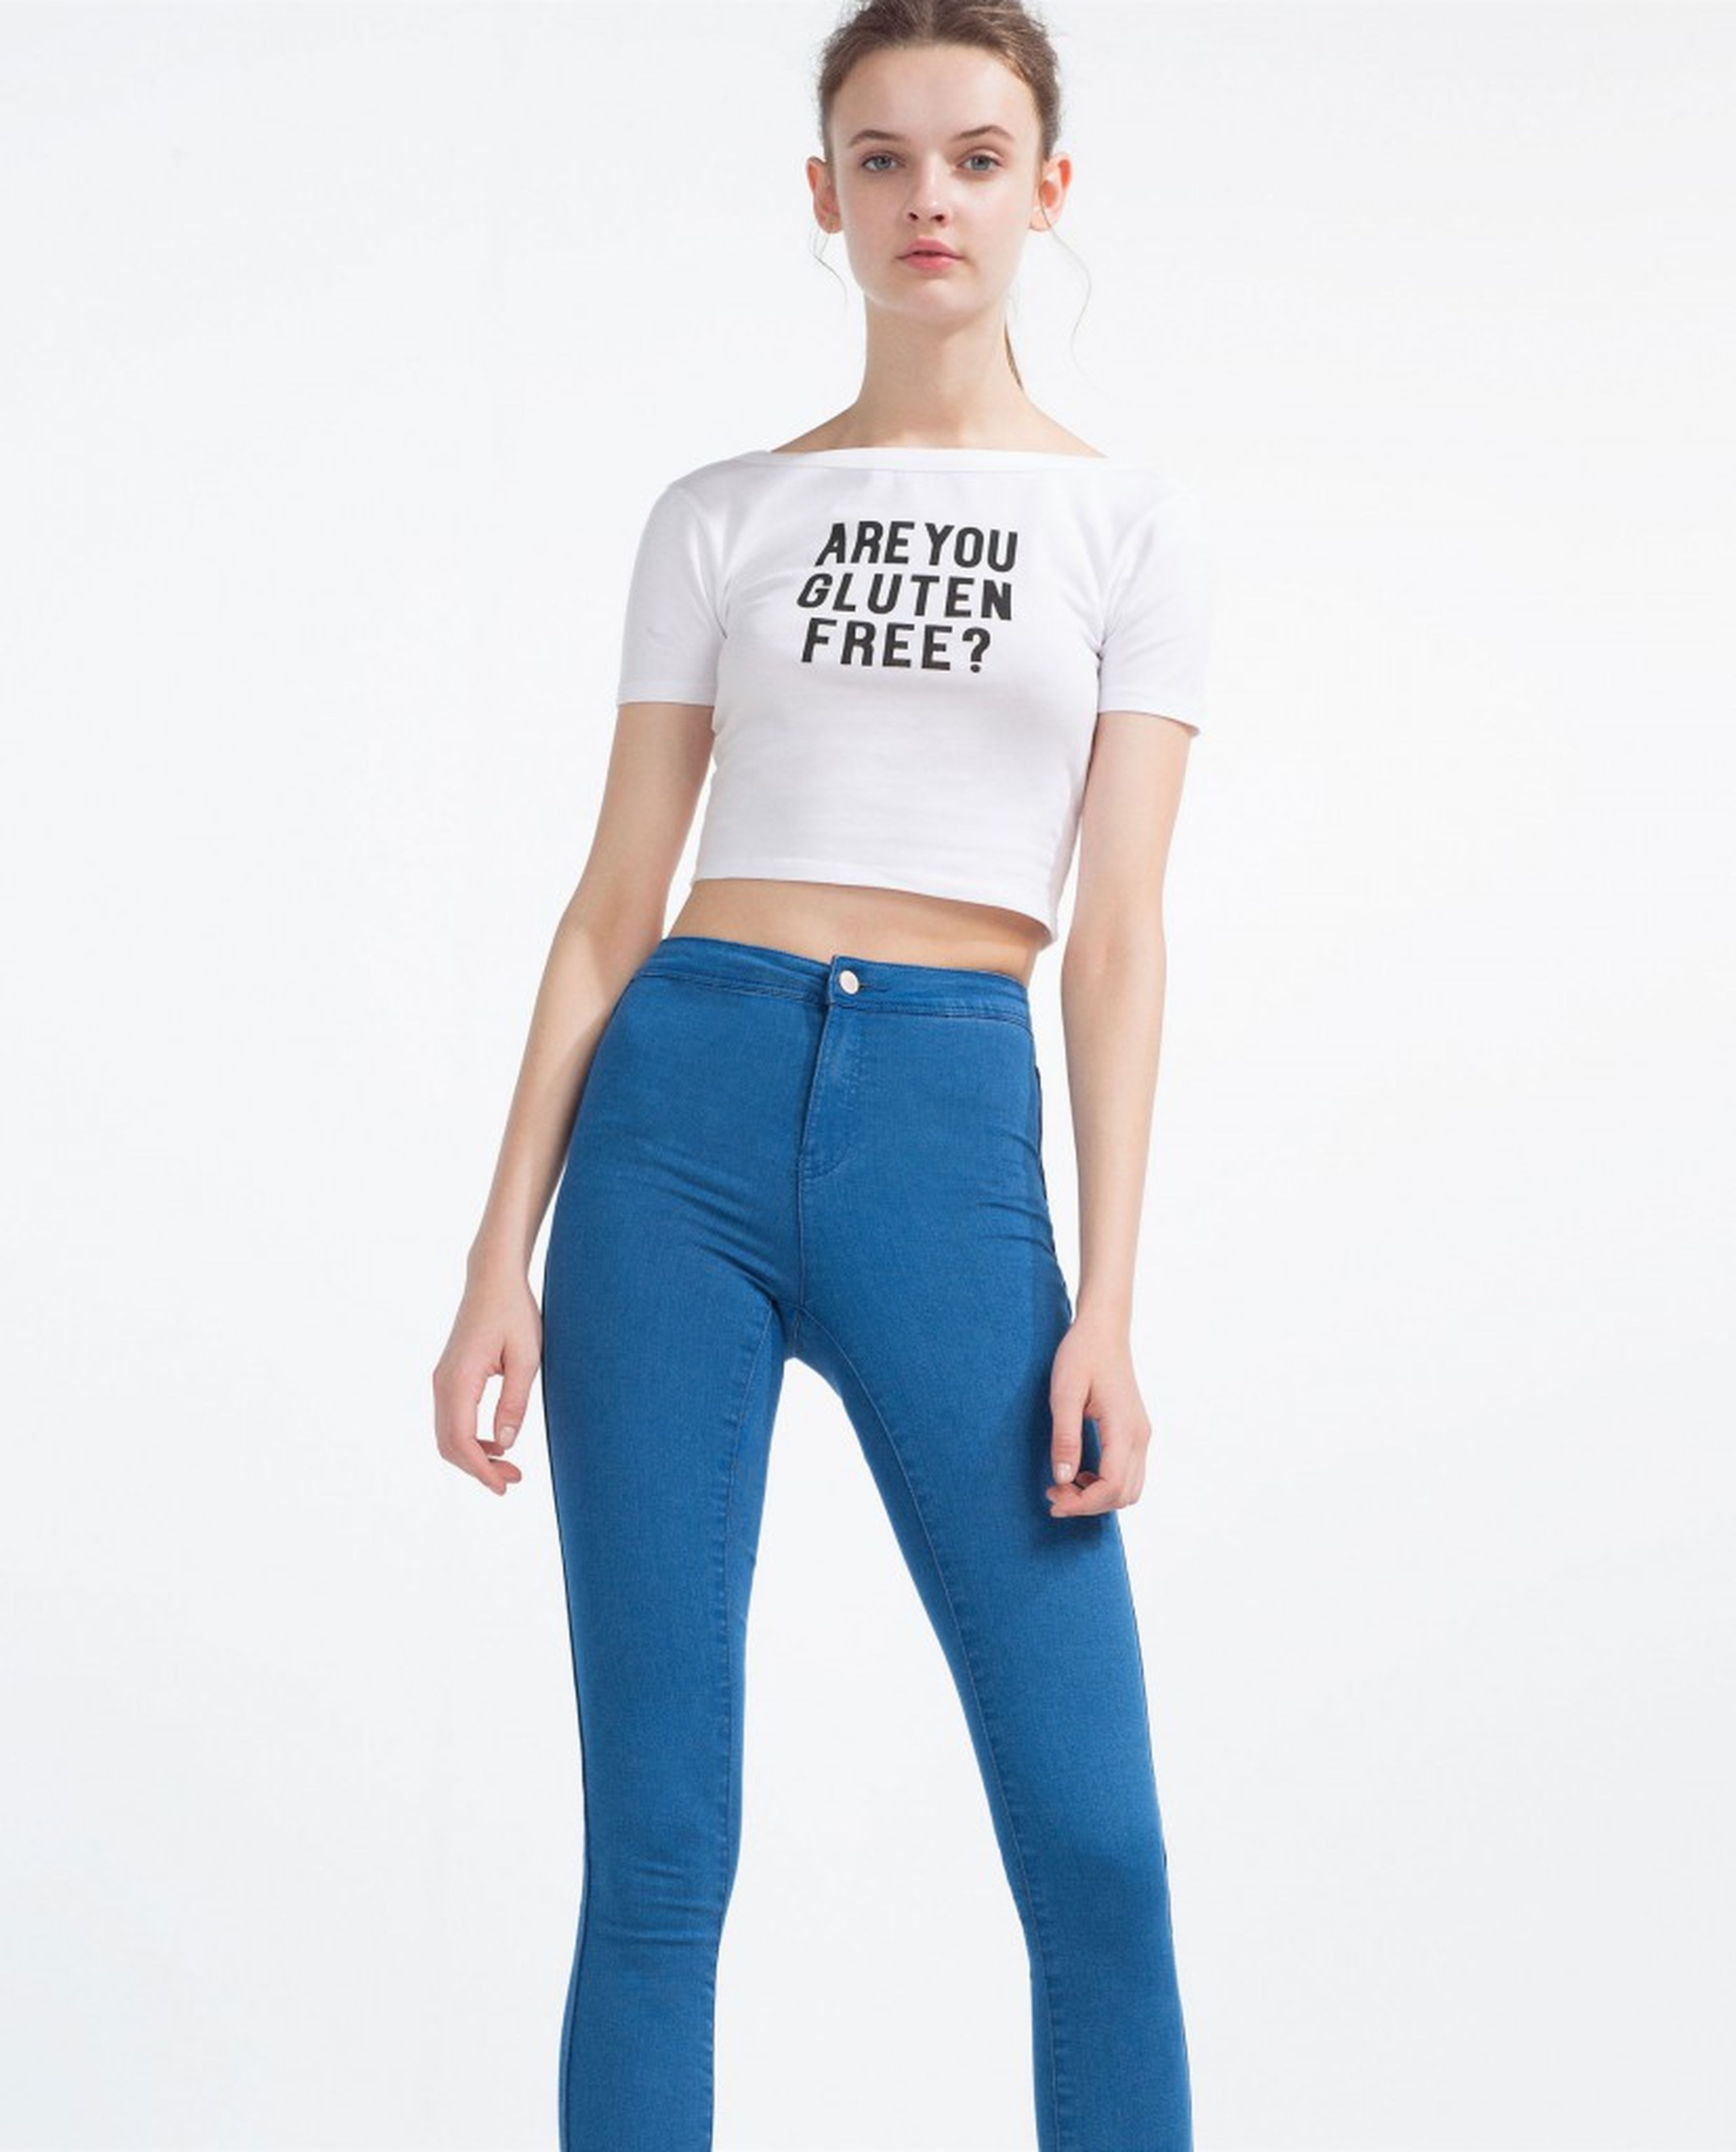 Camiseta estampada de Zara, "Are you gluten free?".